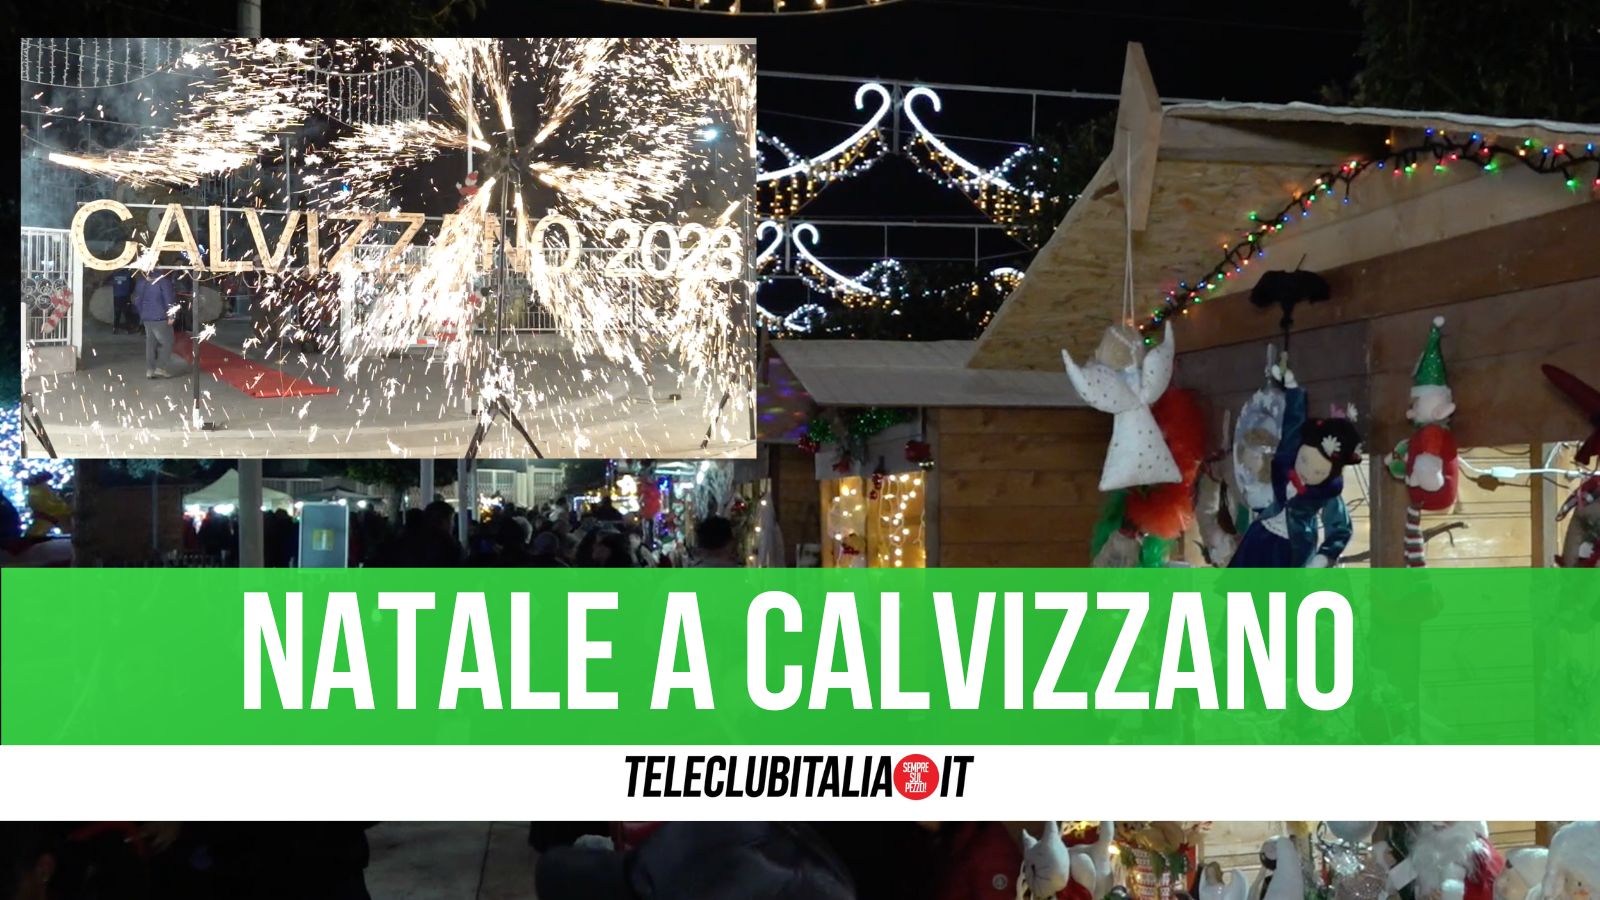 Villa Calvisia a Calvizzano diventa un villaggio di Natale con mercatini e luminarie